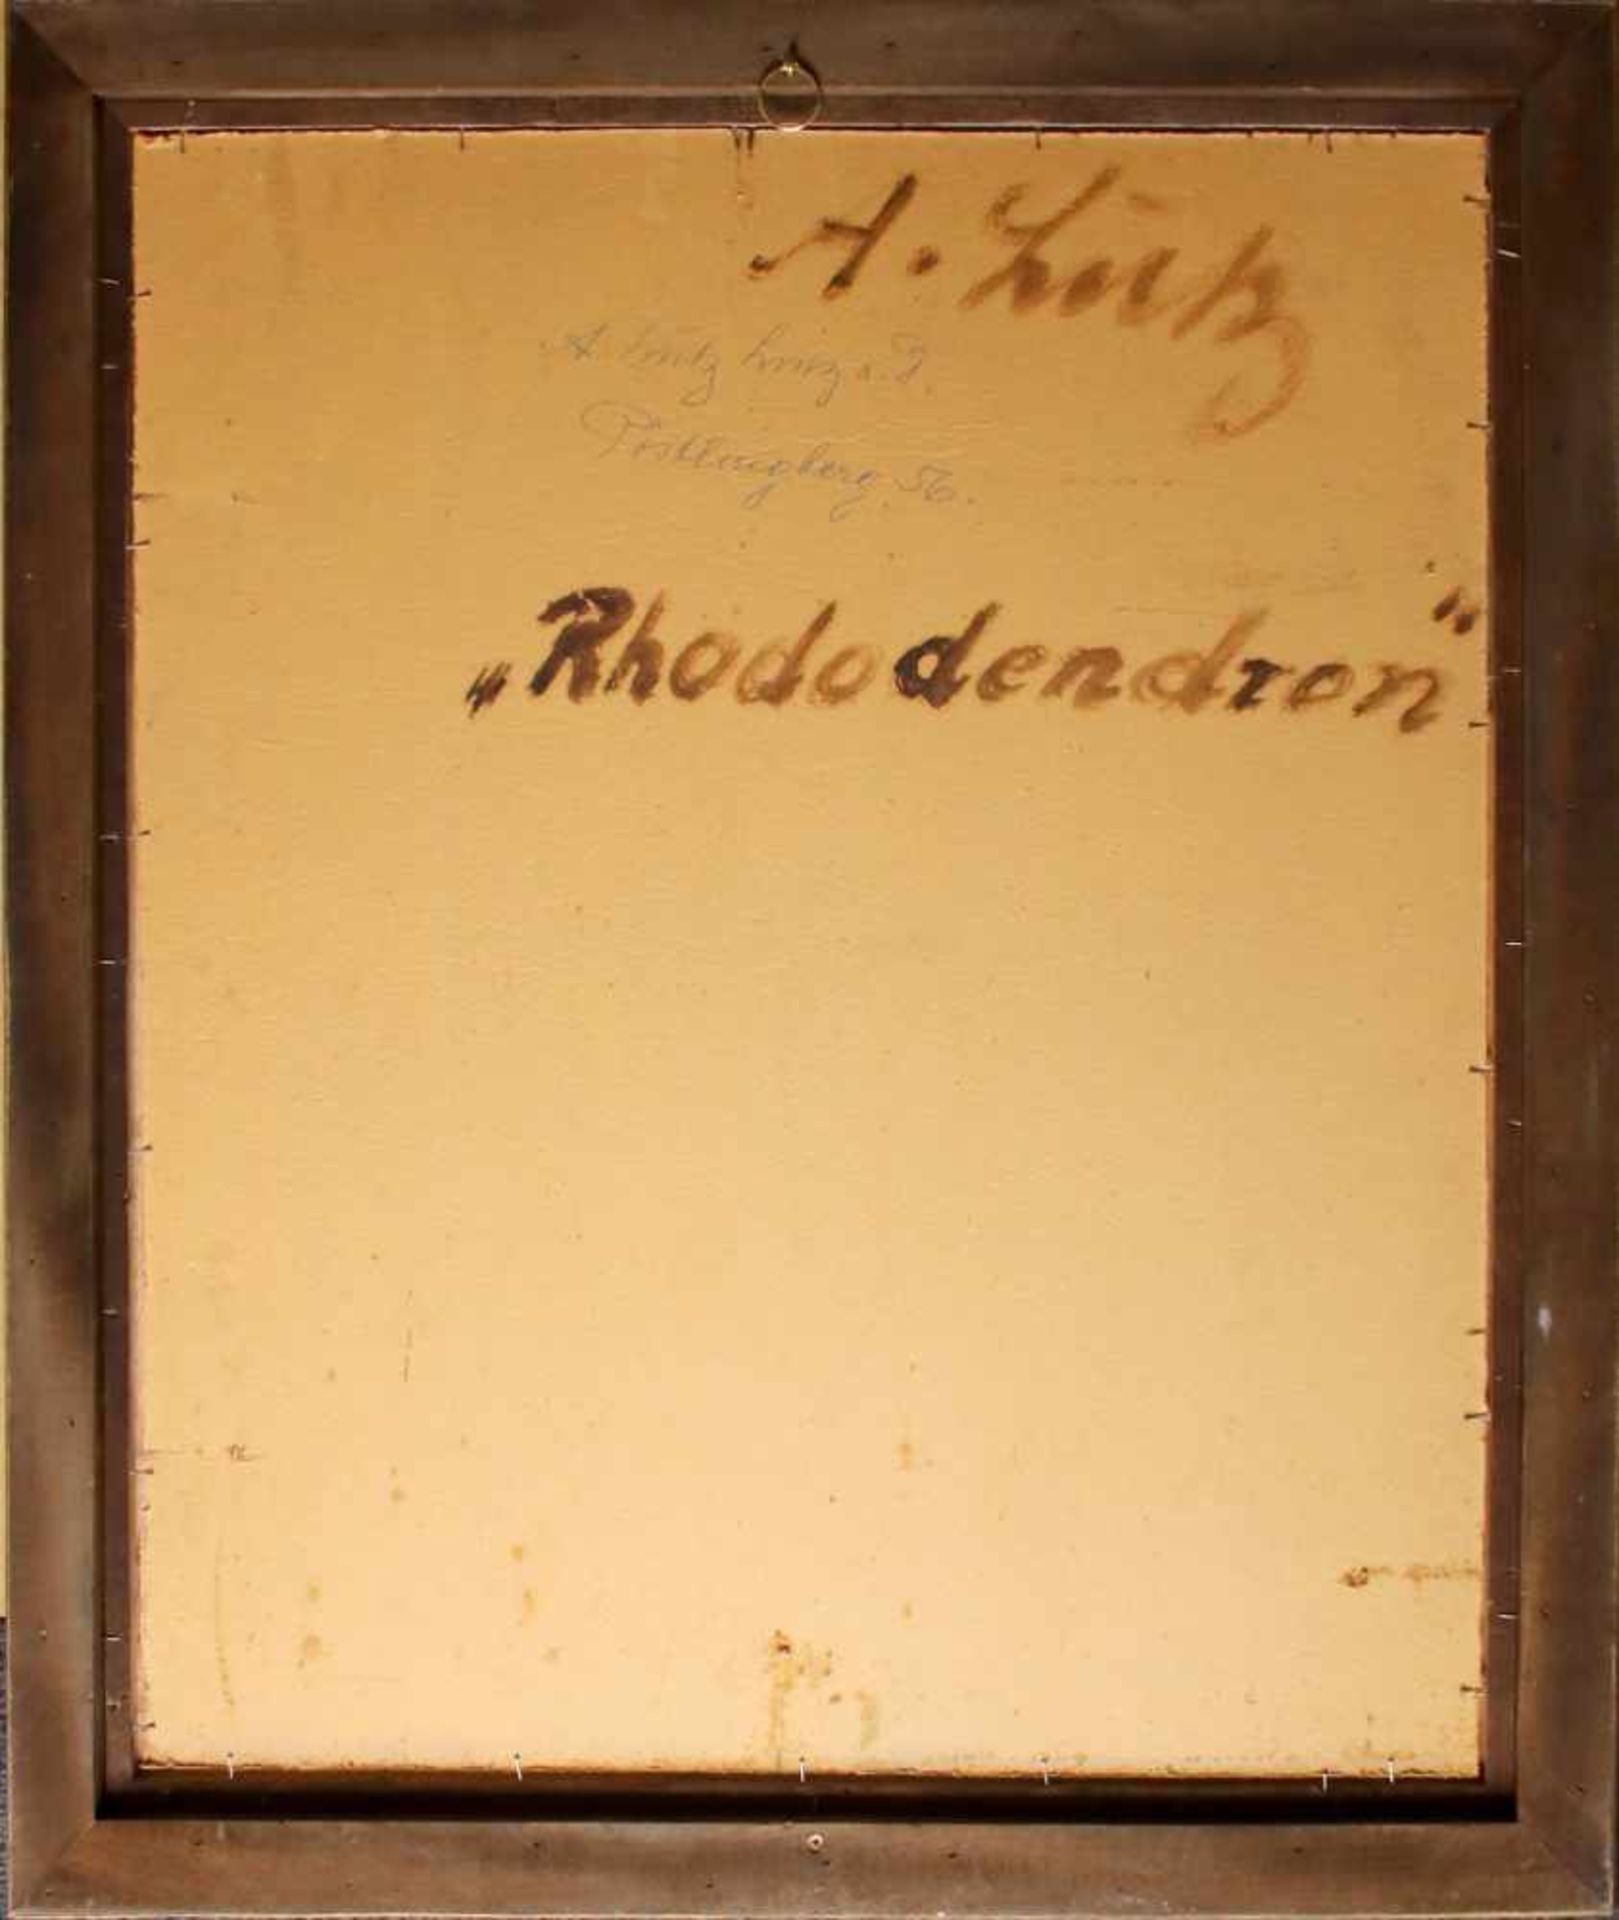 Anton Lutz (1894 - 1992) Rhododendron Öl auf Karton Signiert 64,5 x 54,5 cm - Bild 3 aus 3